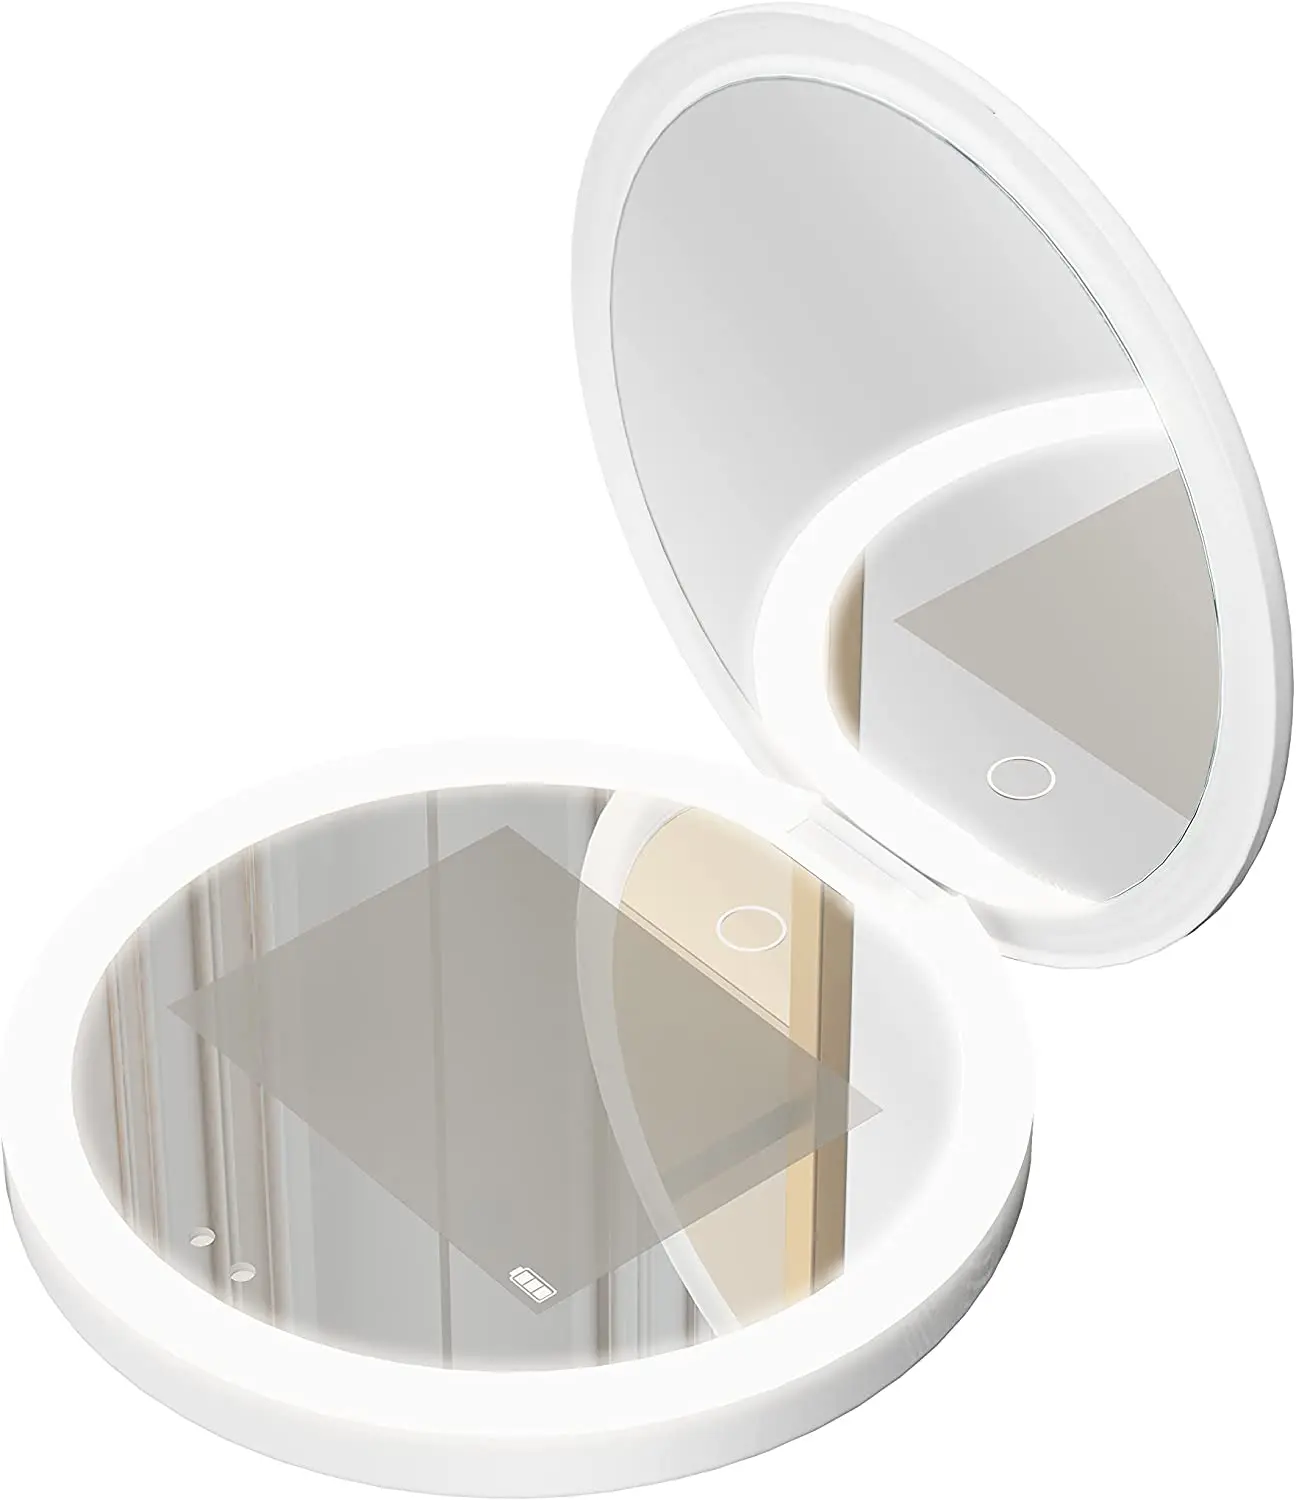 Sonnenschutz-Test UV-Spiegel 2X Vergrößerung LED-Licht Double Sides Folding  Obm